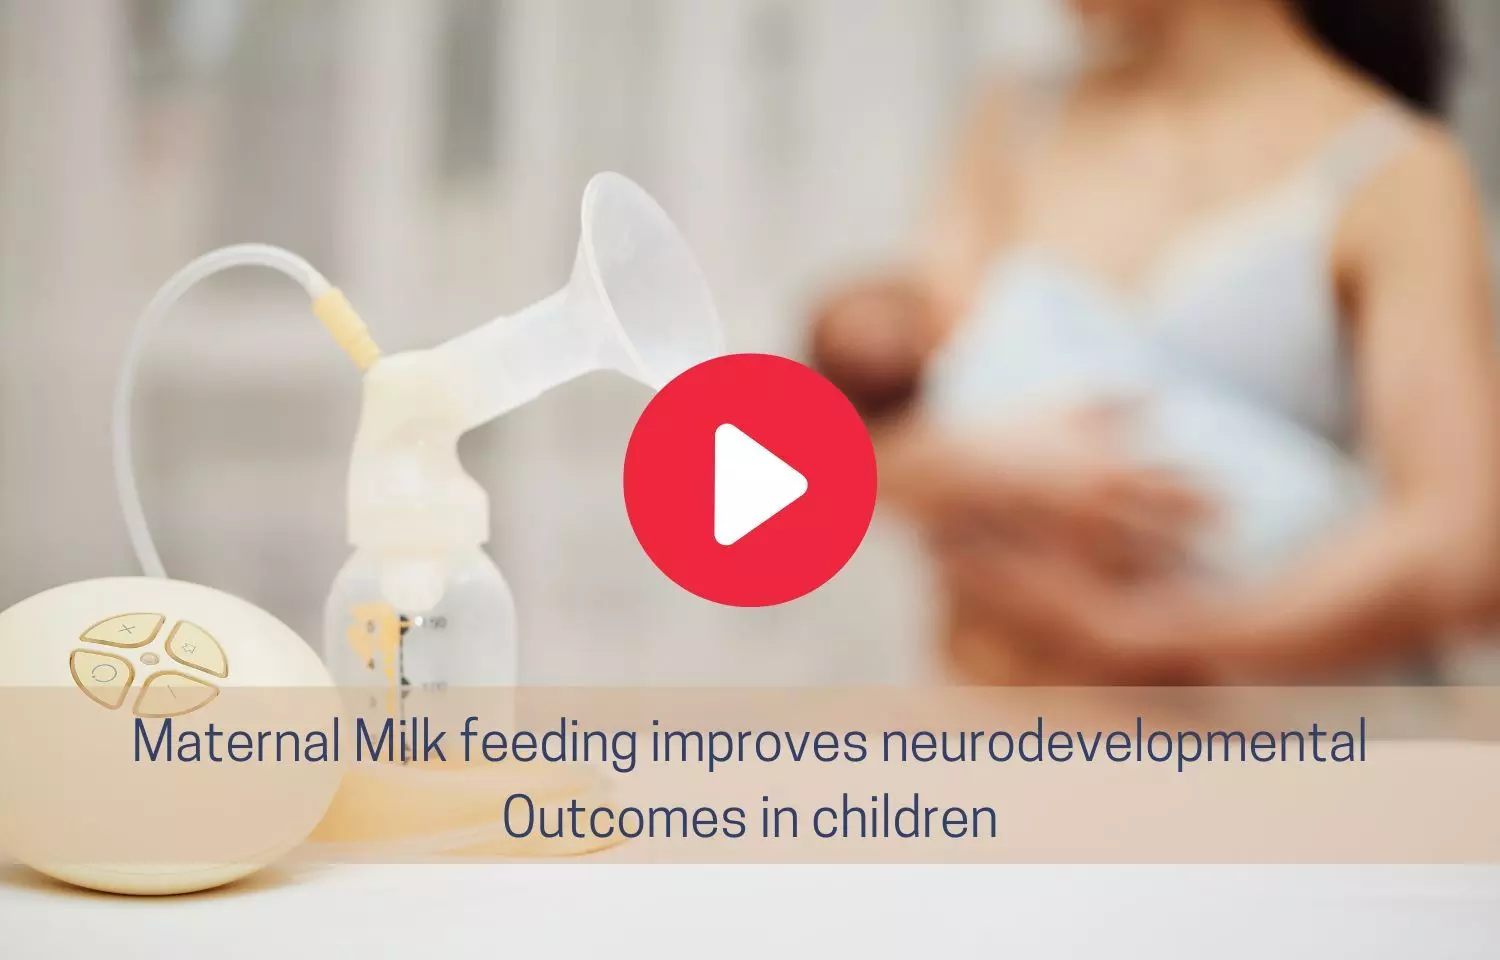 Maternal Milk Feeding improves neurodevelopmental Outcomes in children